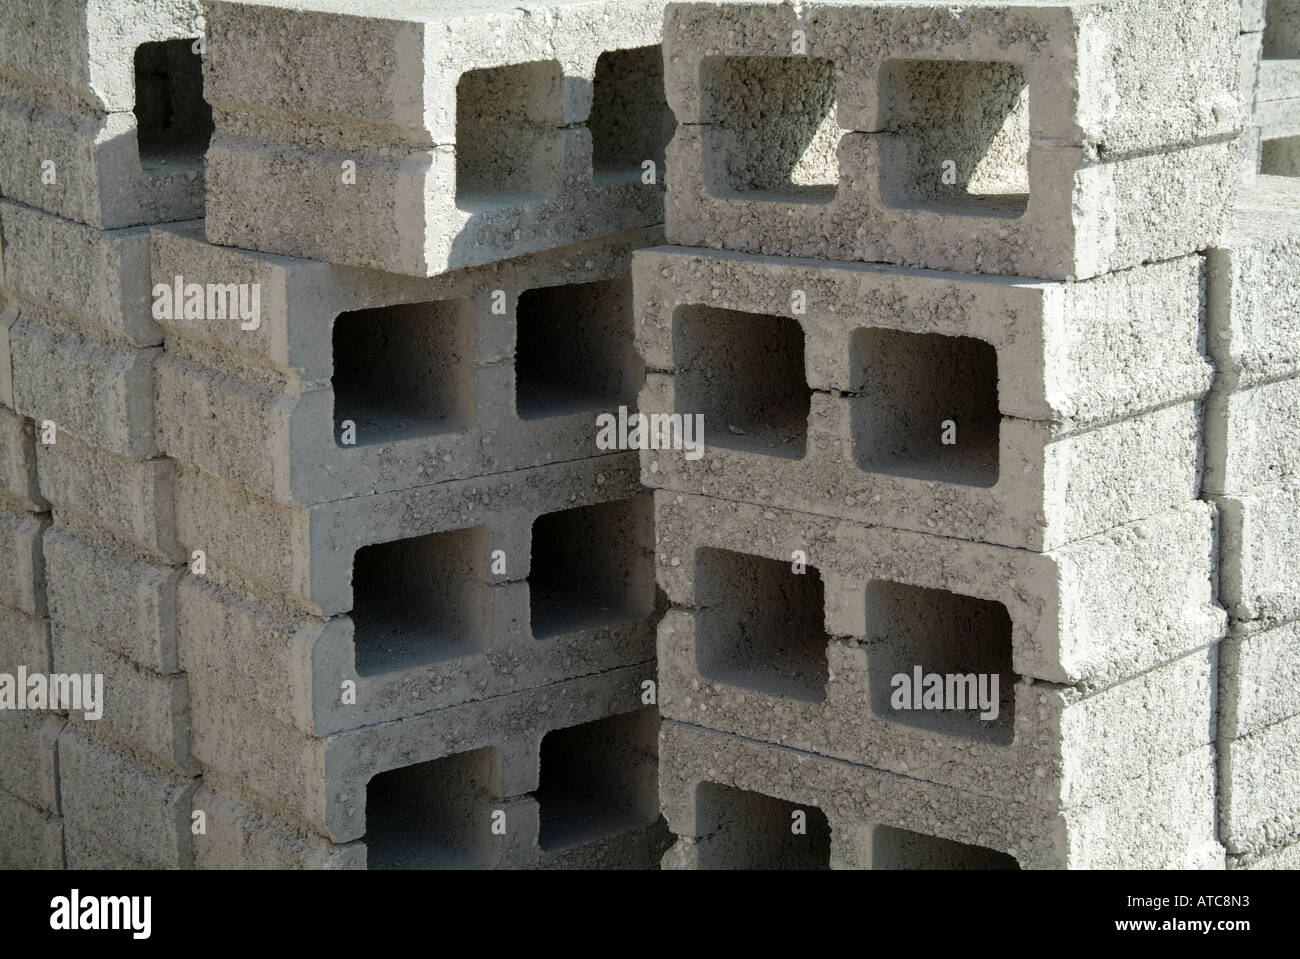 Building, blocks, breeze, concrete, construction, building, wall ...